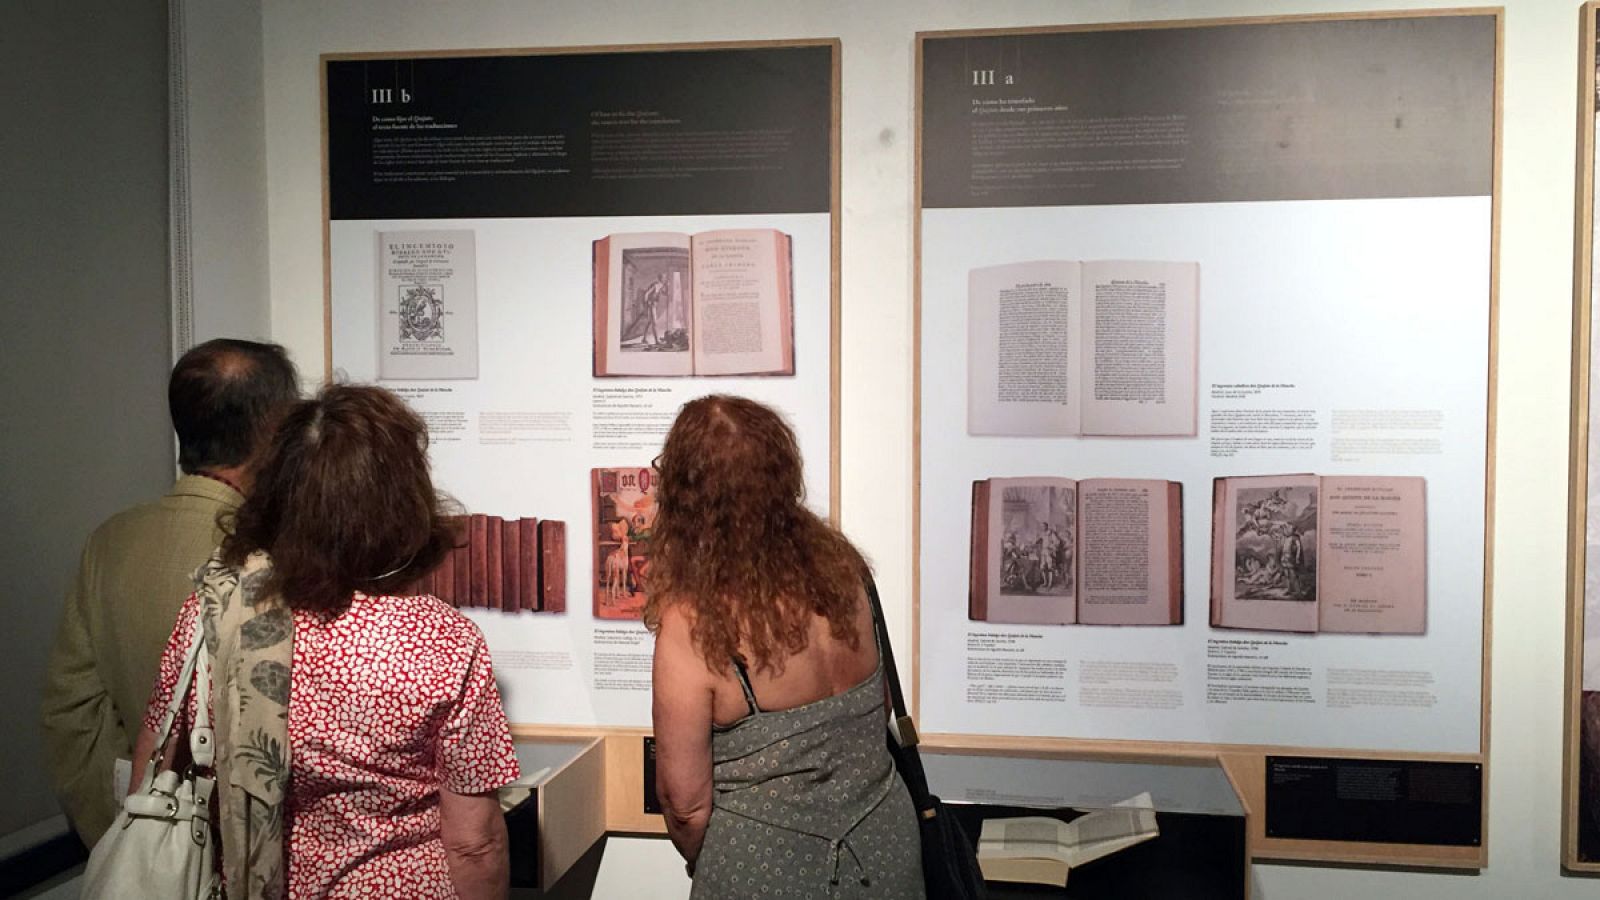 Tres personas observan las diferentes traducciones de Don Quijote de la Mancha durante la inauguración de la exposición "Quijotes por el mundo" en el Instituto Cervantes de Nueva York.